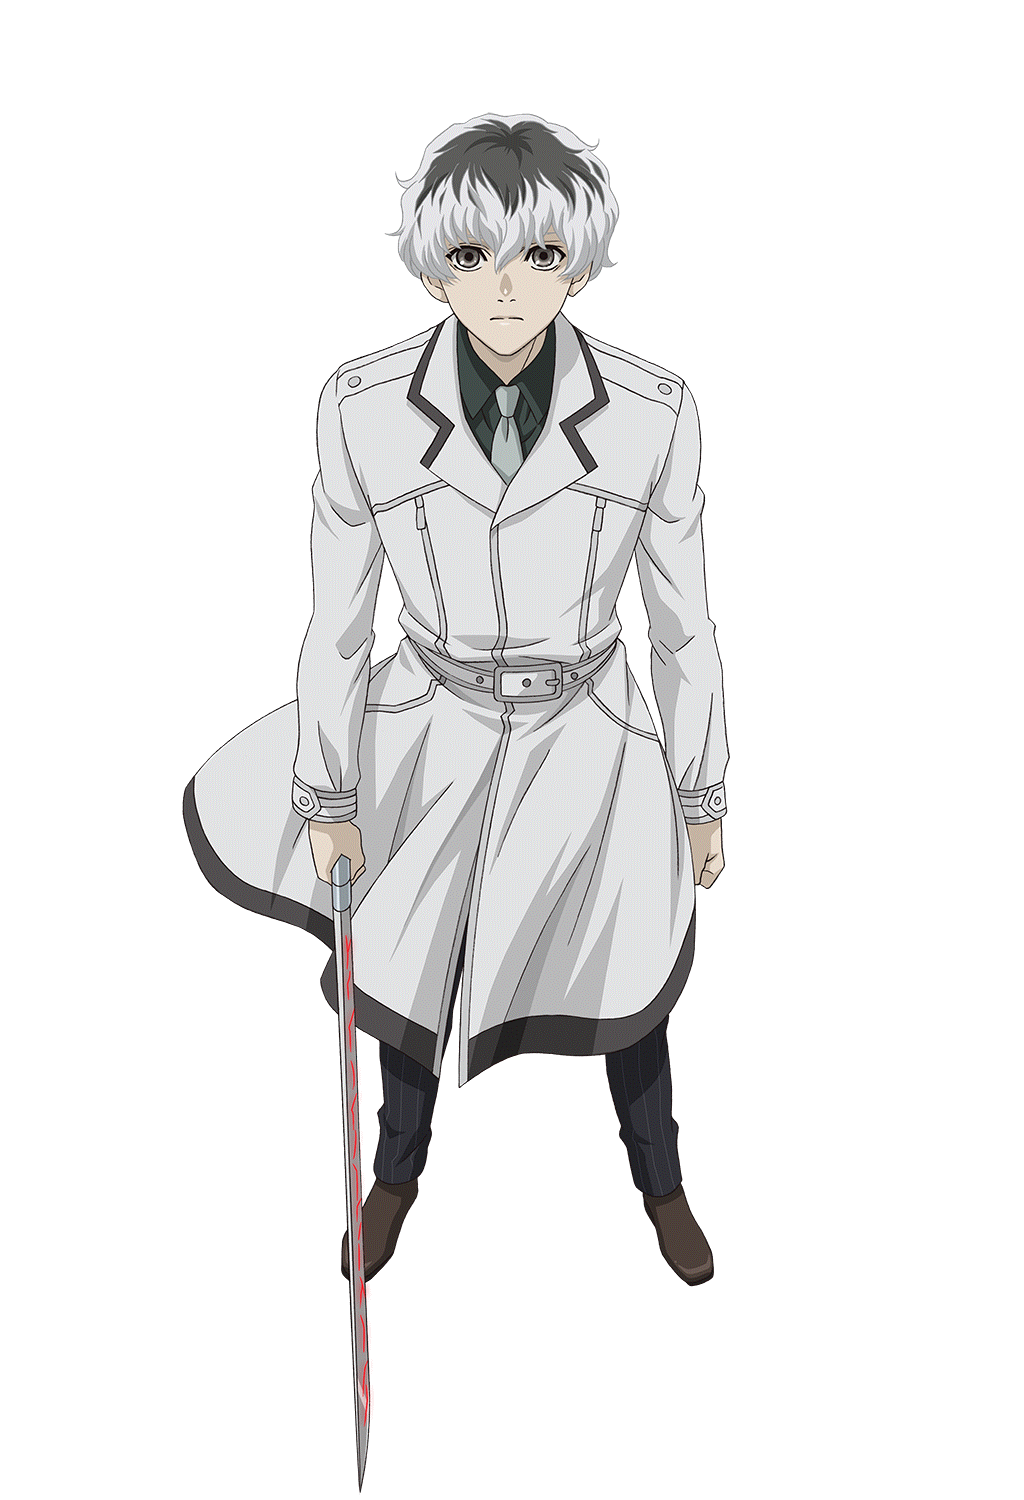 TOP 7 - Personagens de anime com o cabelo branco e cinzento